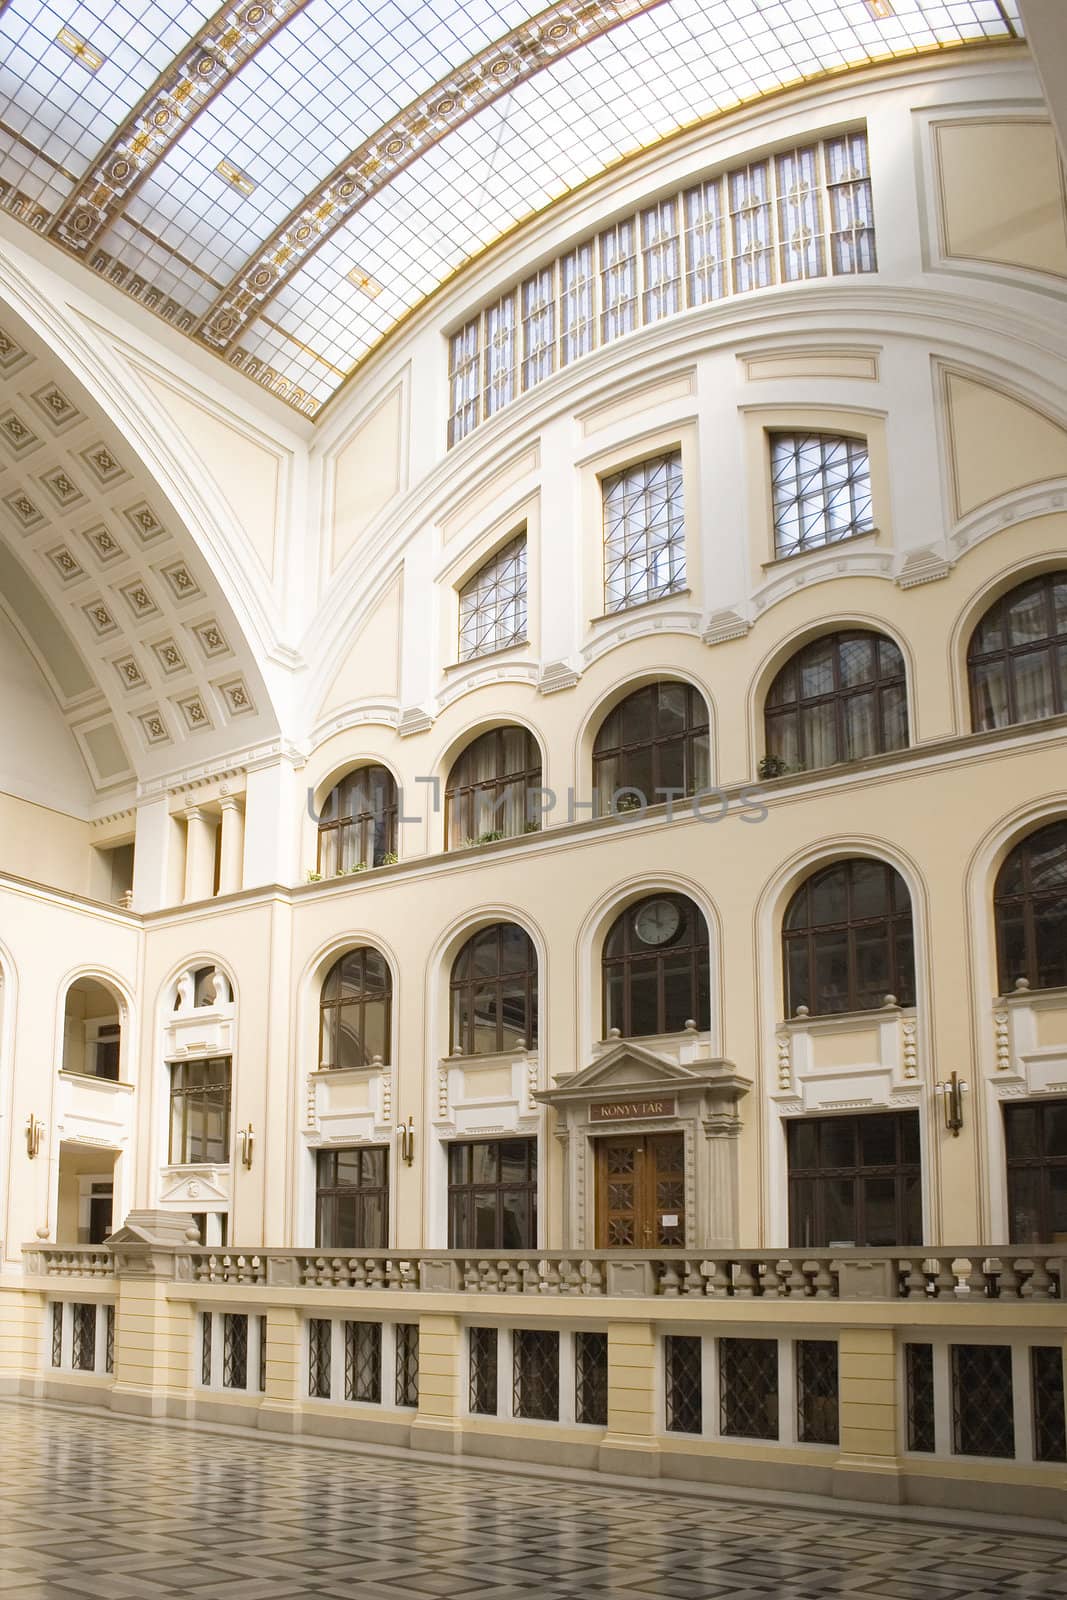 Interior of University by AlexKhrom